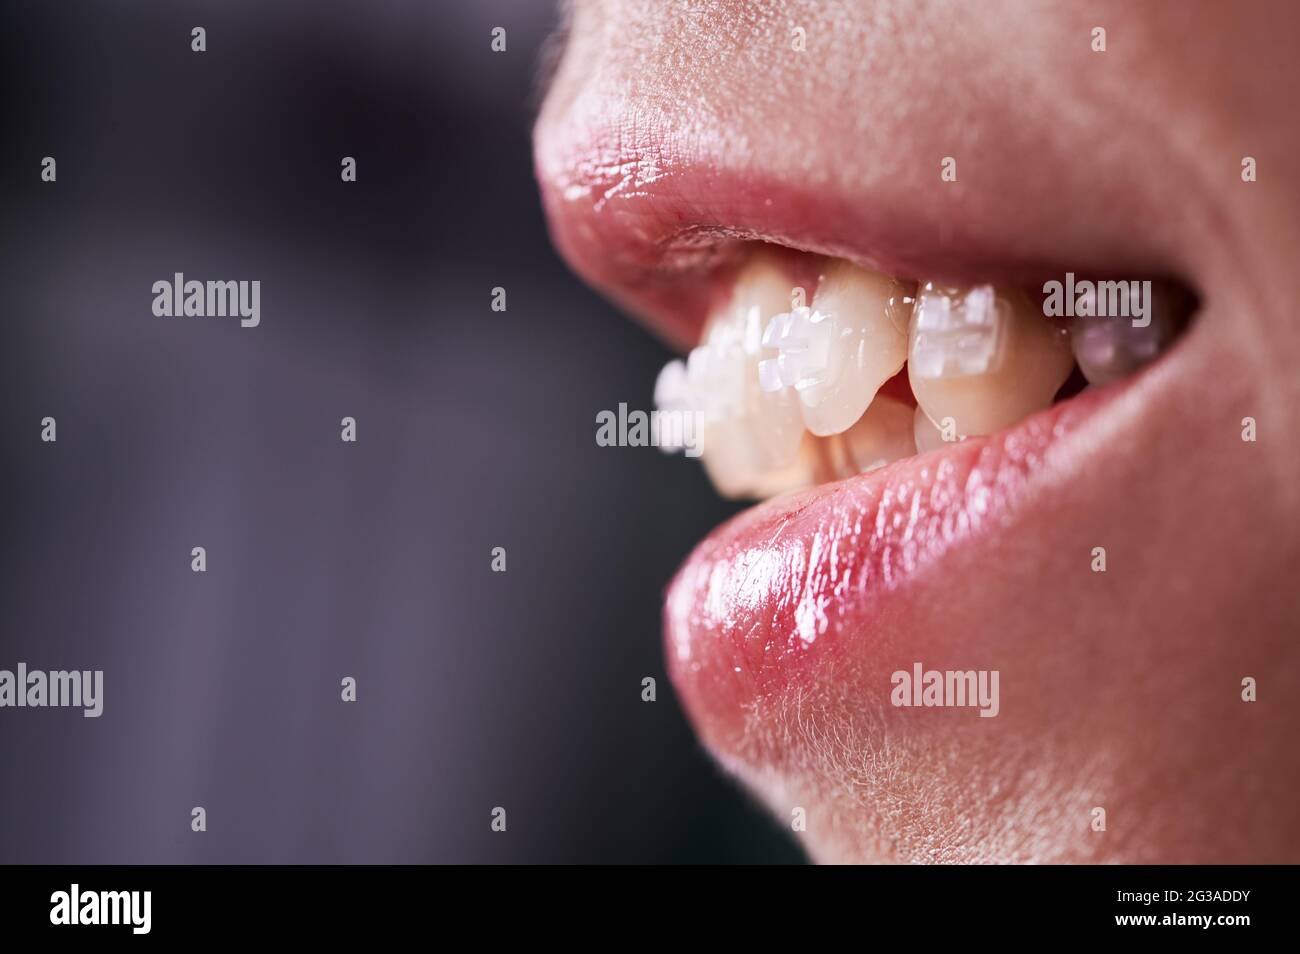 Nahaufnahme einer lächelnden Frau mit geöffnetem Mund, die weiße Zähne mit kieferorthopädischen Klammern zeigt. Weibliche Patientin bei Zahnspange Behandlung. Konzept der kieferorthopädischen Behandlung und Stomatologie. Stockfoto